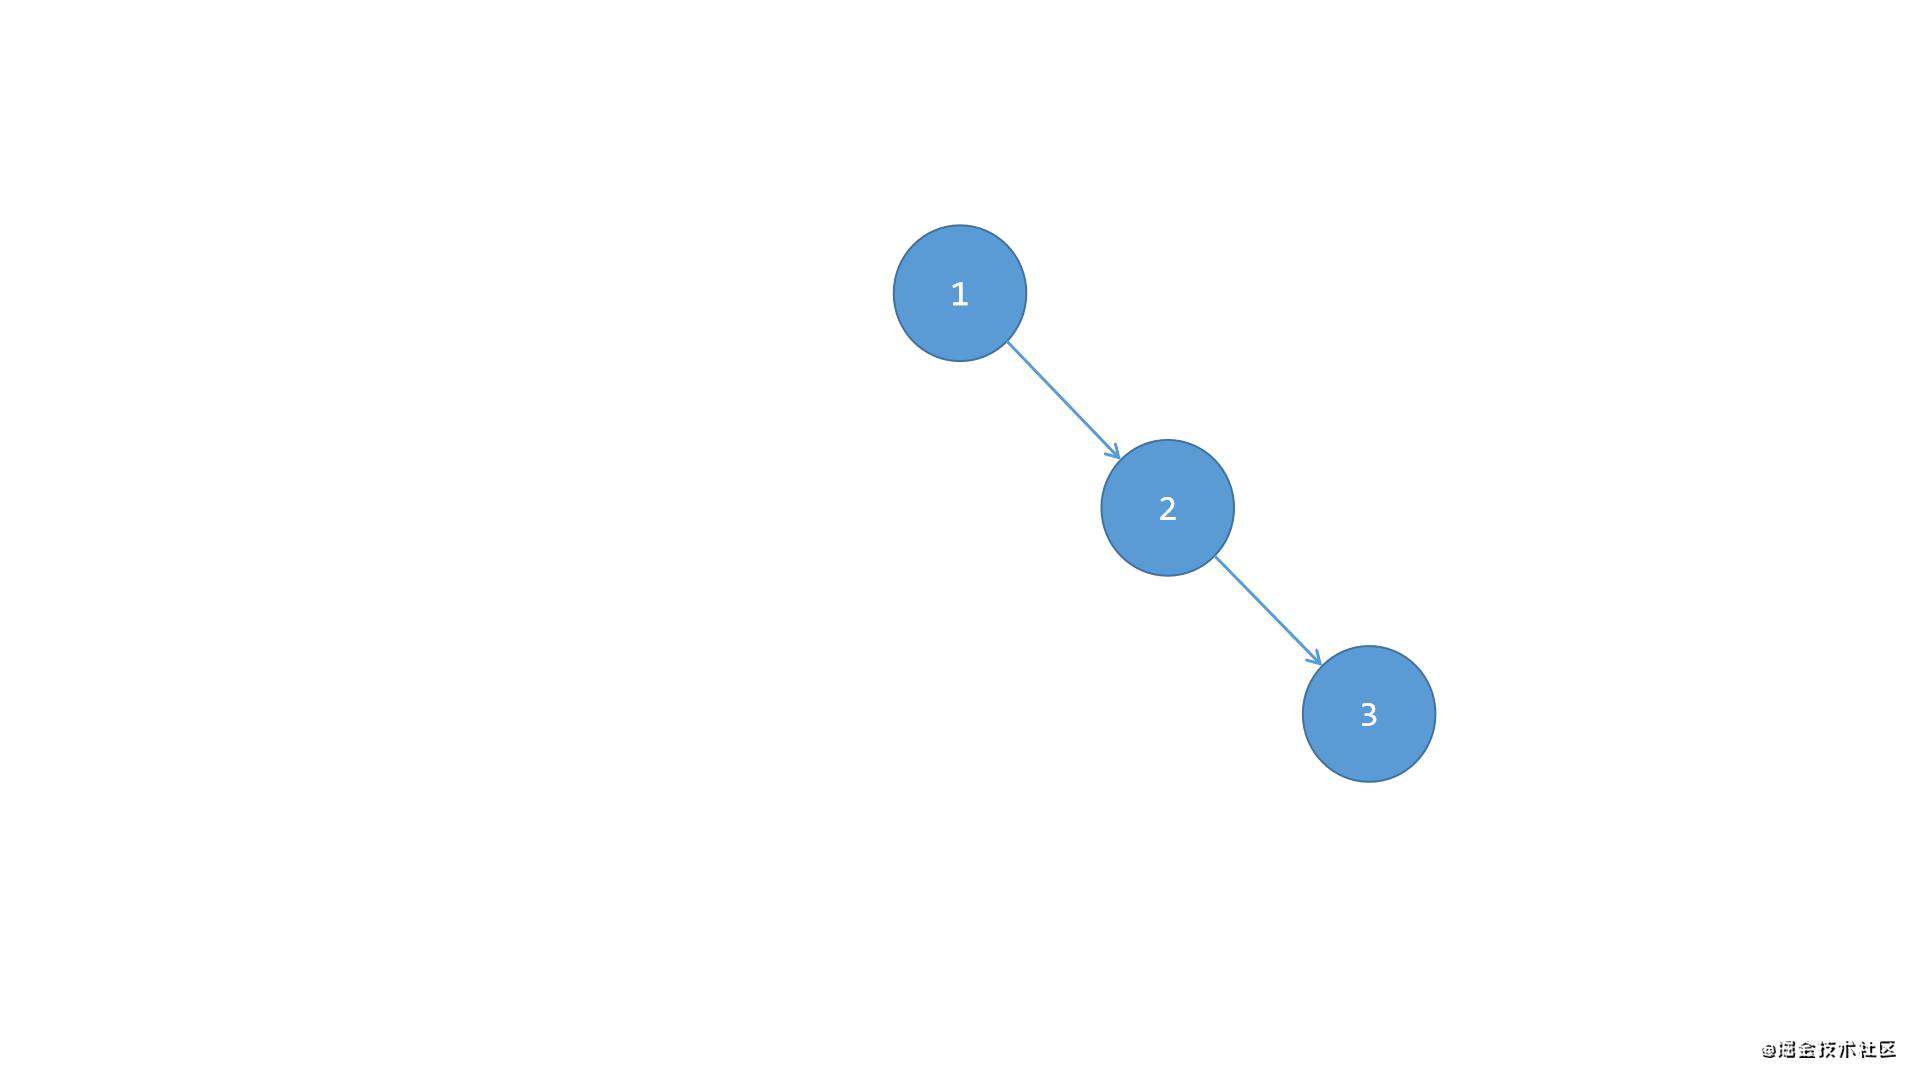 16-数据结构-二叉树（第二部分：自平衡二叉树，自平衡二叉树是建立在二叉搜索树基础之上的，需要先弄懂之前的二叉搜索树）